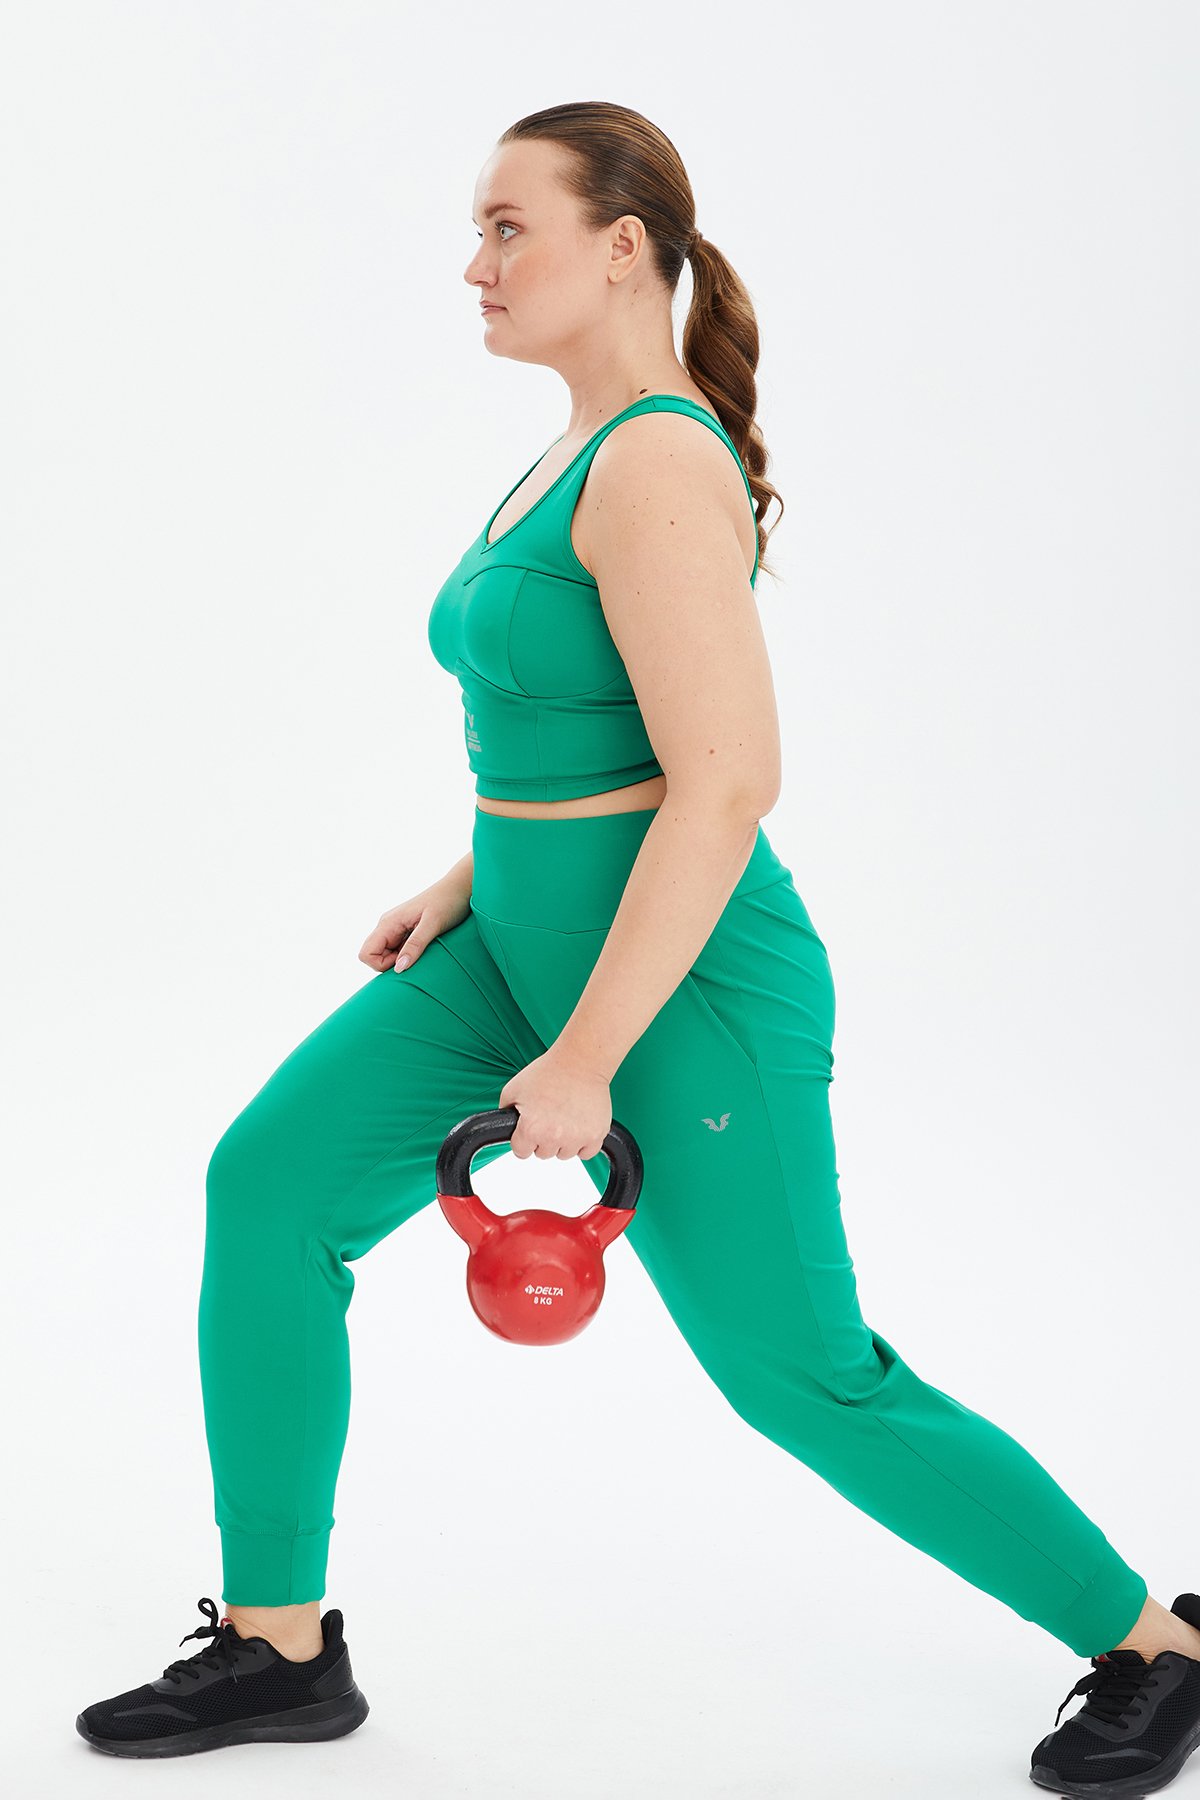 Kadın Yeşil Fitness-Antrenman Spor Fashion Crop Top Toparlayıcı Bra Sporcu Sütyeni Büstiyer 0604 - 15